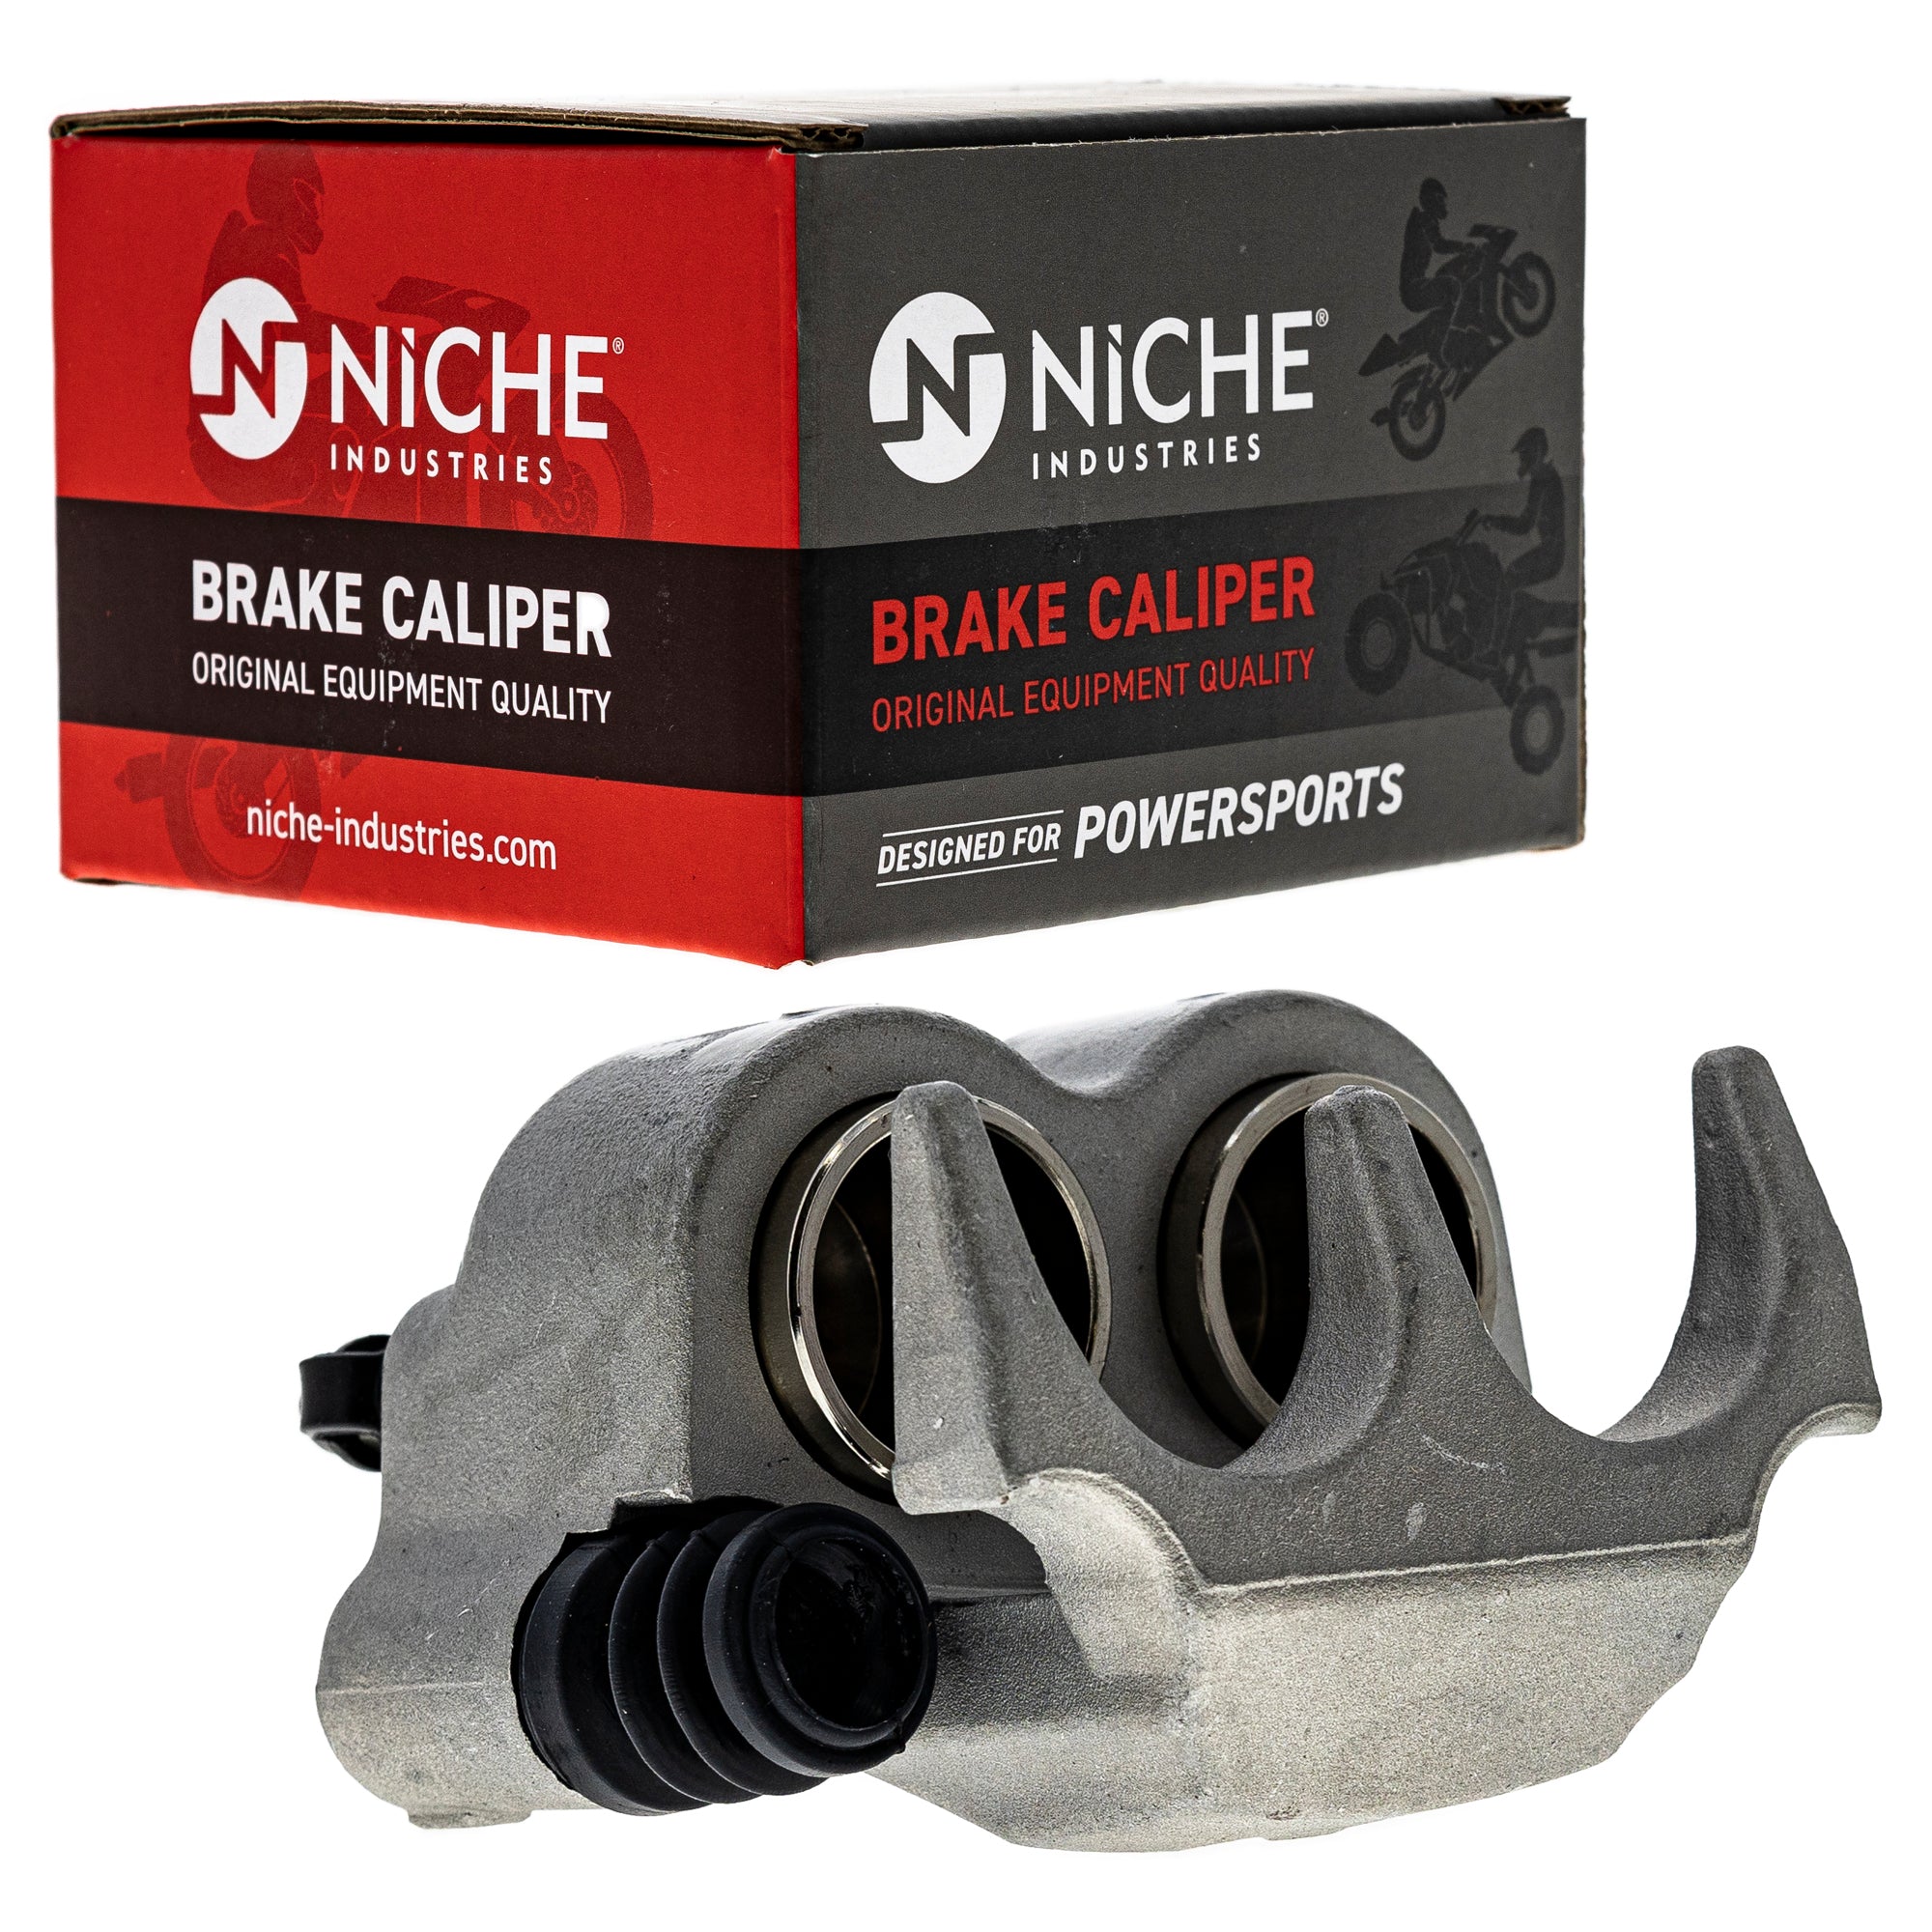 NICHE MK1001282 Brake Caliper Kit